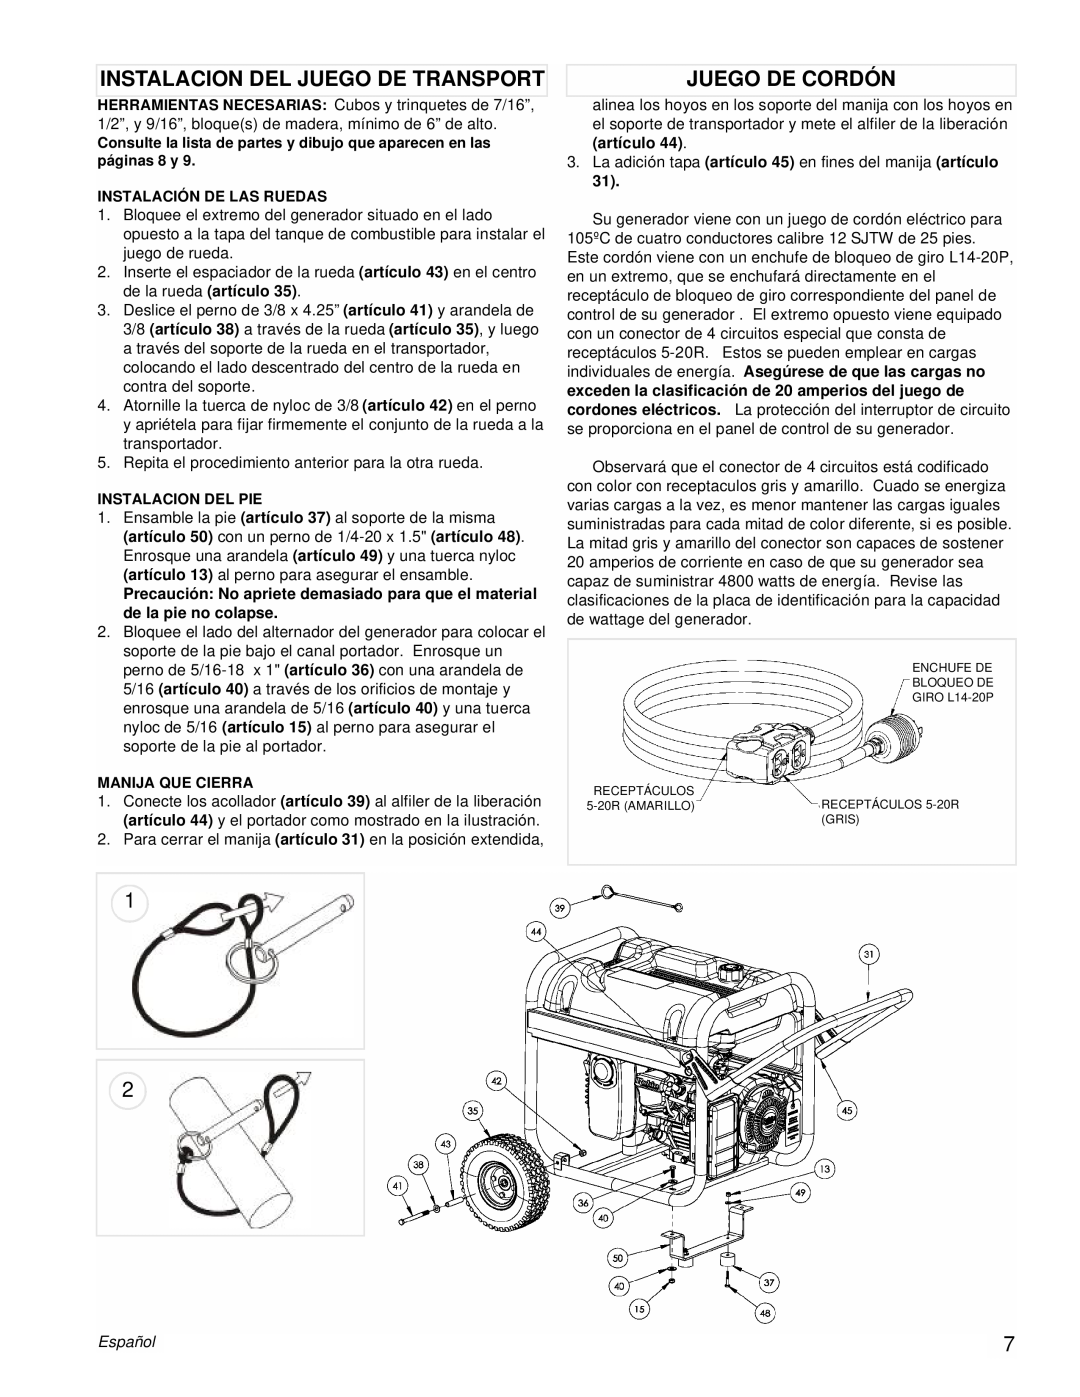 Powermate PM0435001 manual Instalacion Del Juego De Transport, Juego De Cordón, Español 